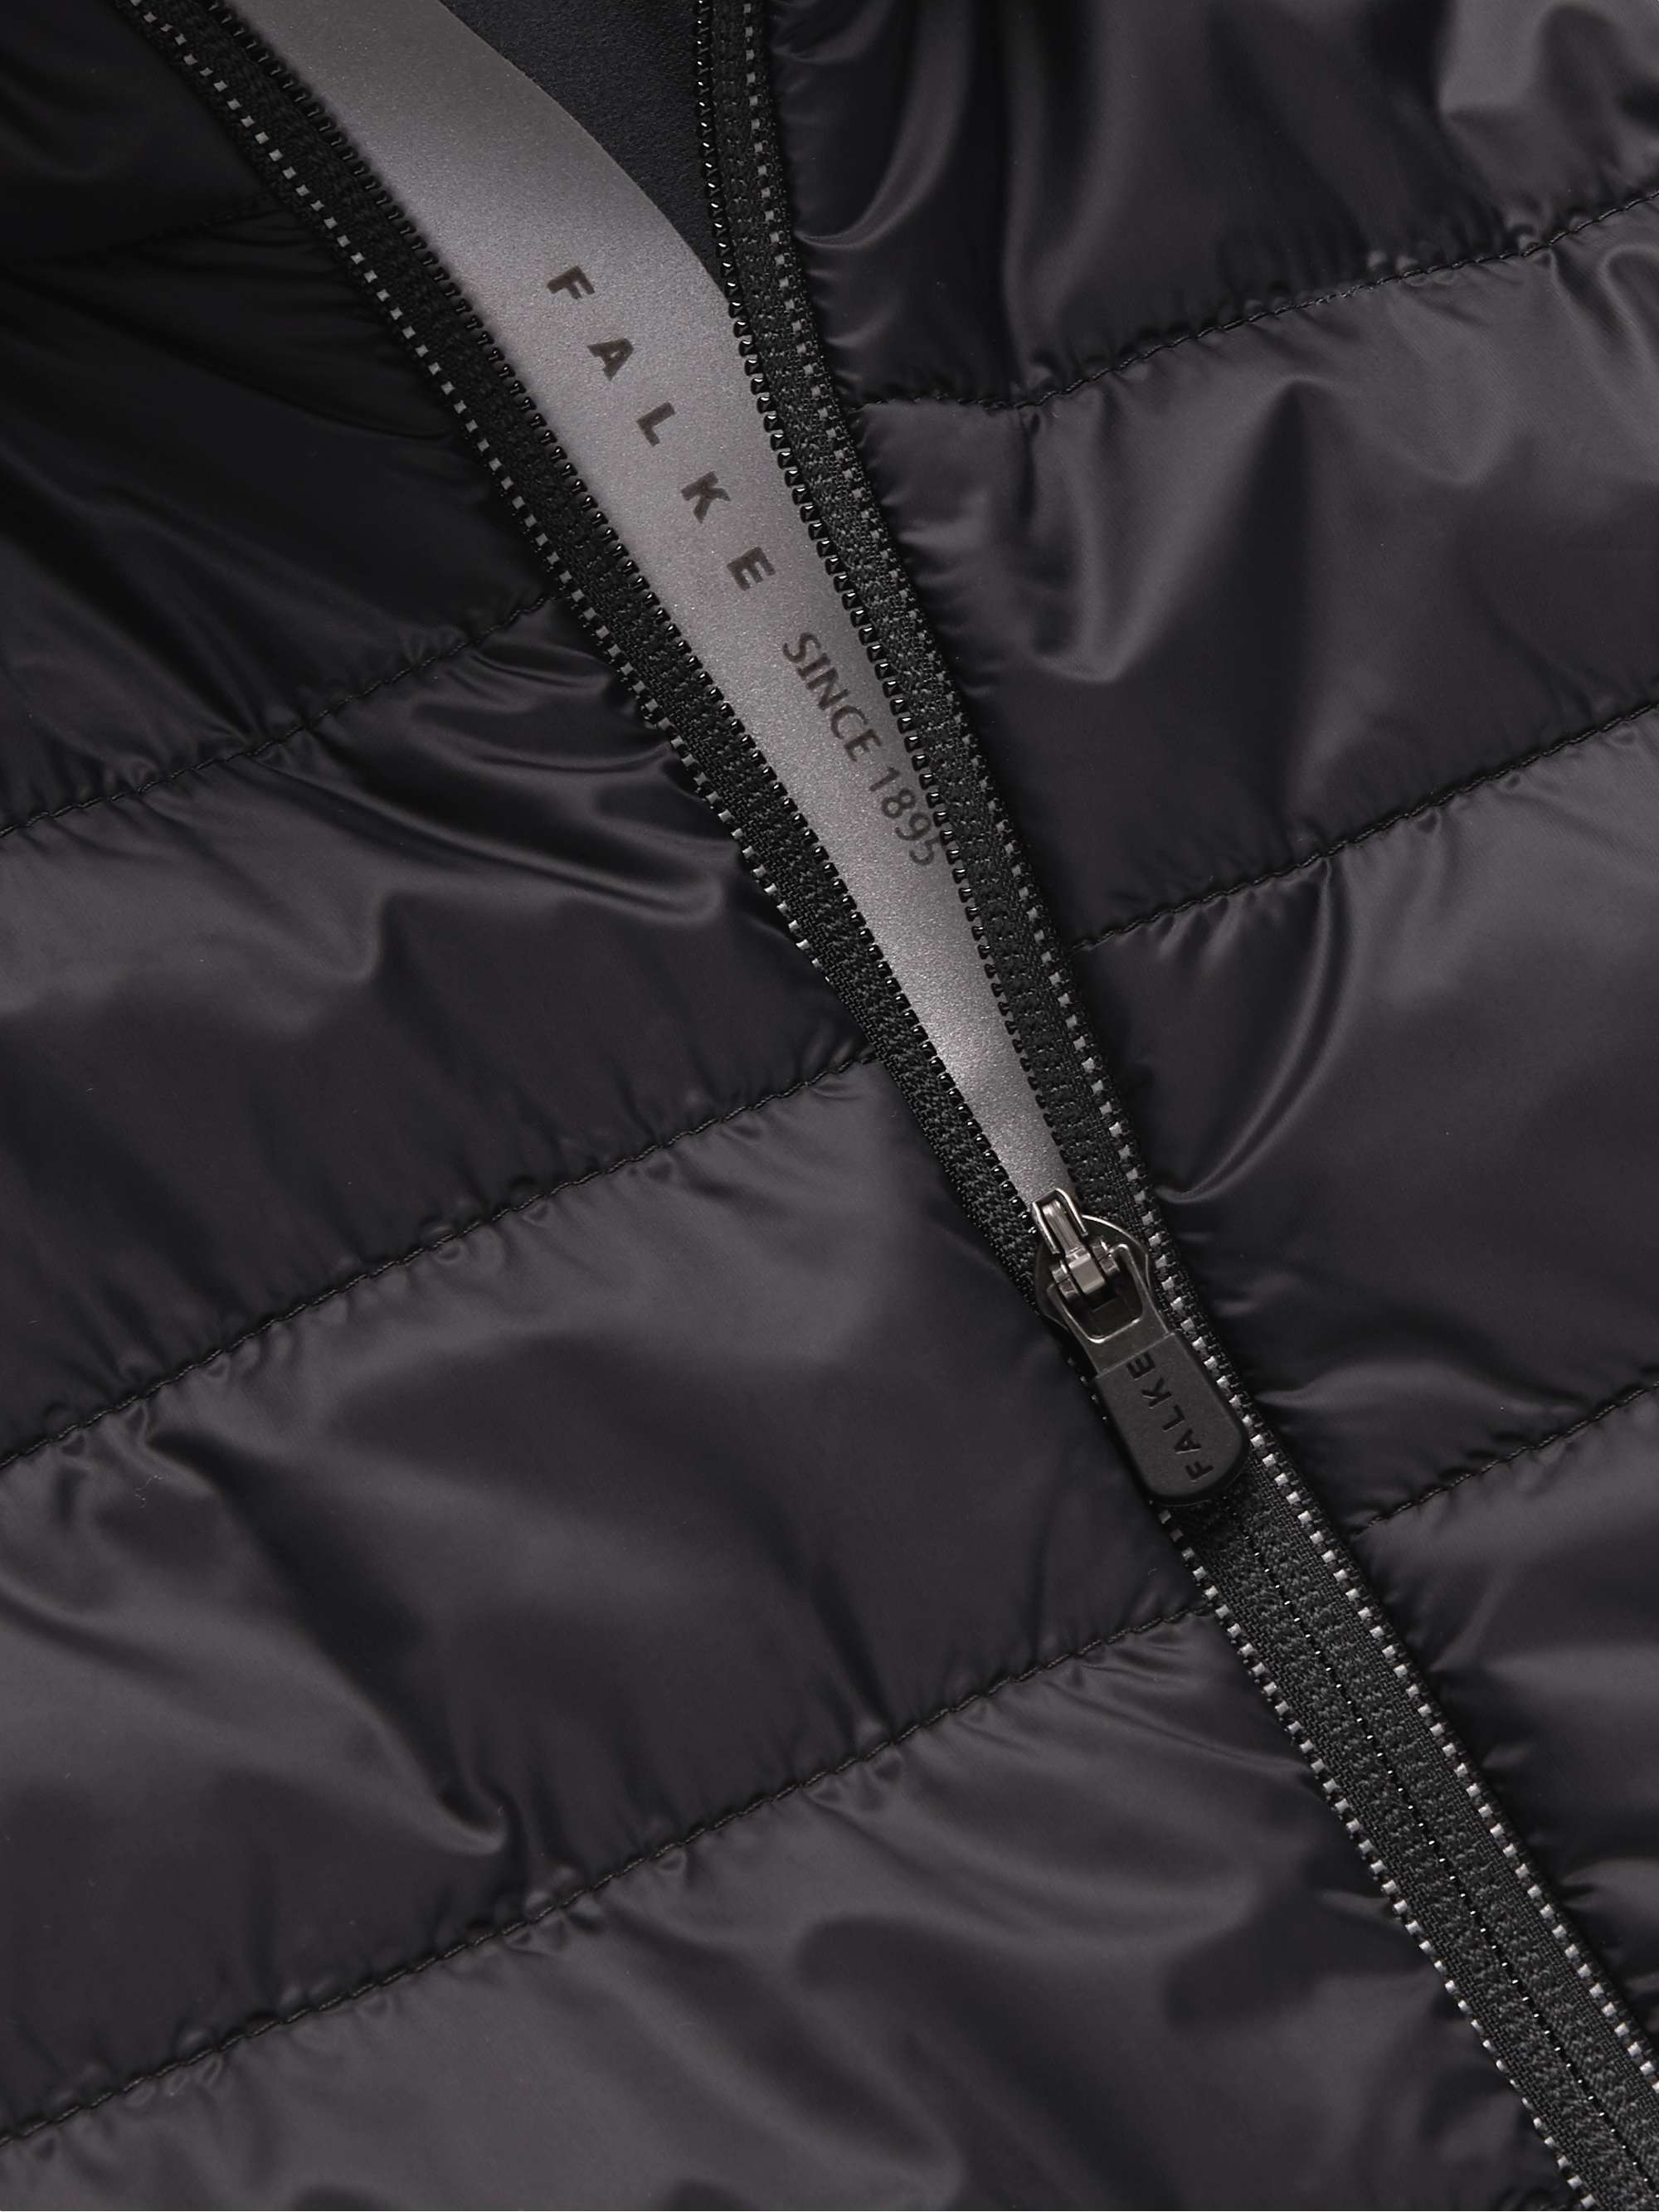 FALKE ERGONOMIC SPORT SYSTEM Stretch Jersey-Trimmed Quilted Ski Jacket